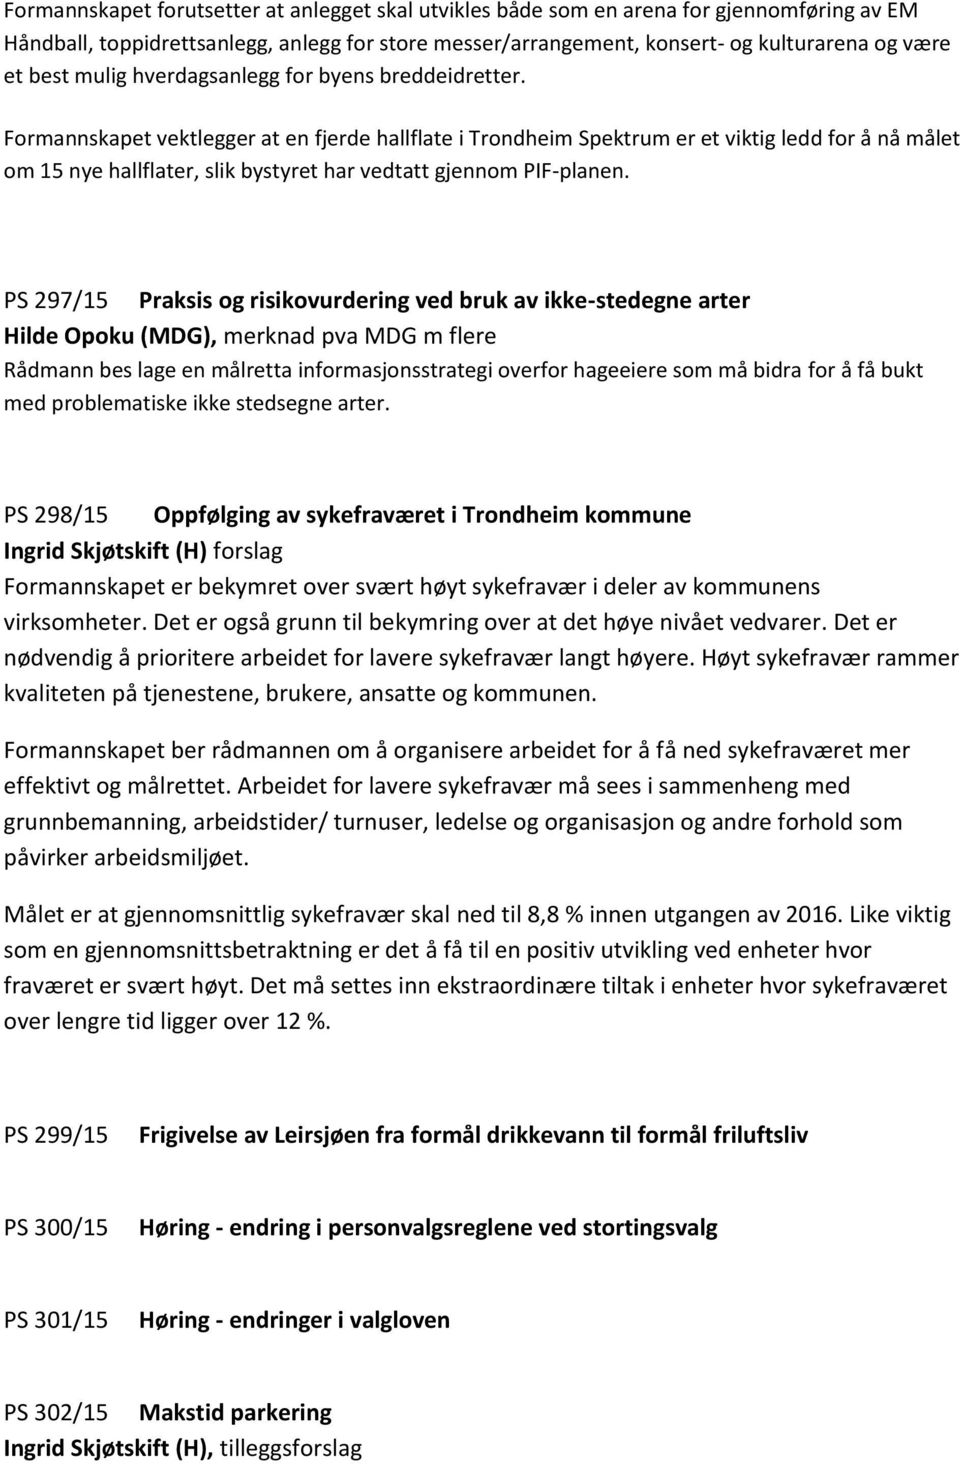 Formannskapet vektlegger at en fjerde hallflate i Trondheim Spektrum er et viktig ledd for å nå målet om 15 nye hallflater, slik bystyret har vedtatt gjennom PIF-planen.